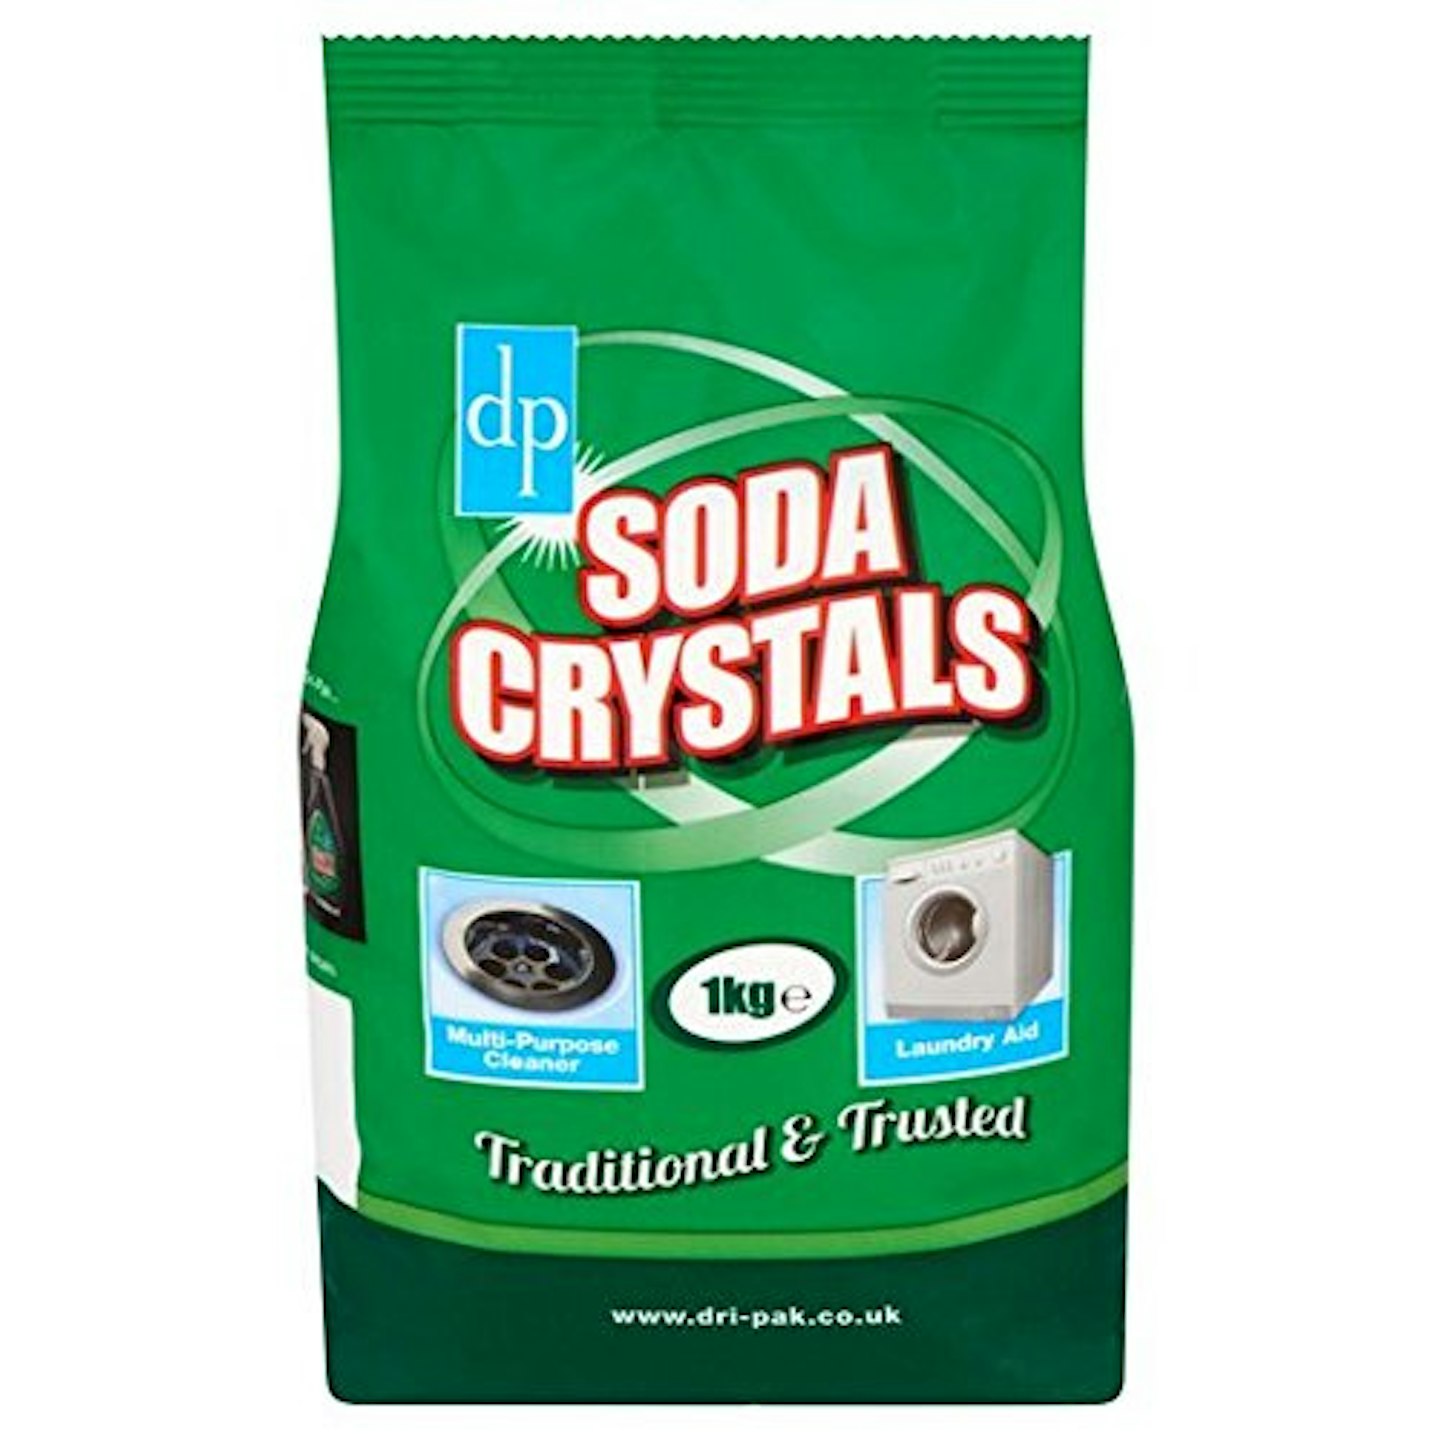 DP Soda Crystals